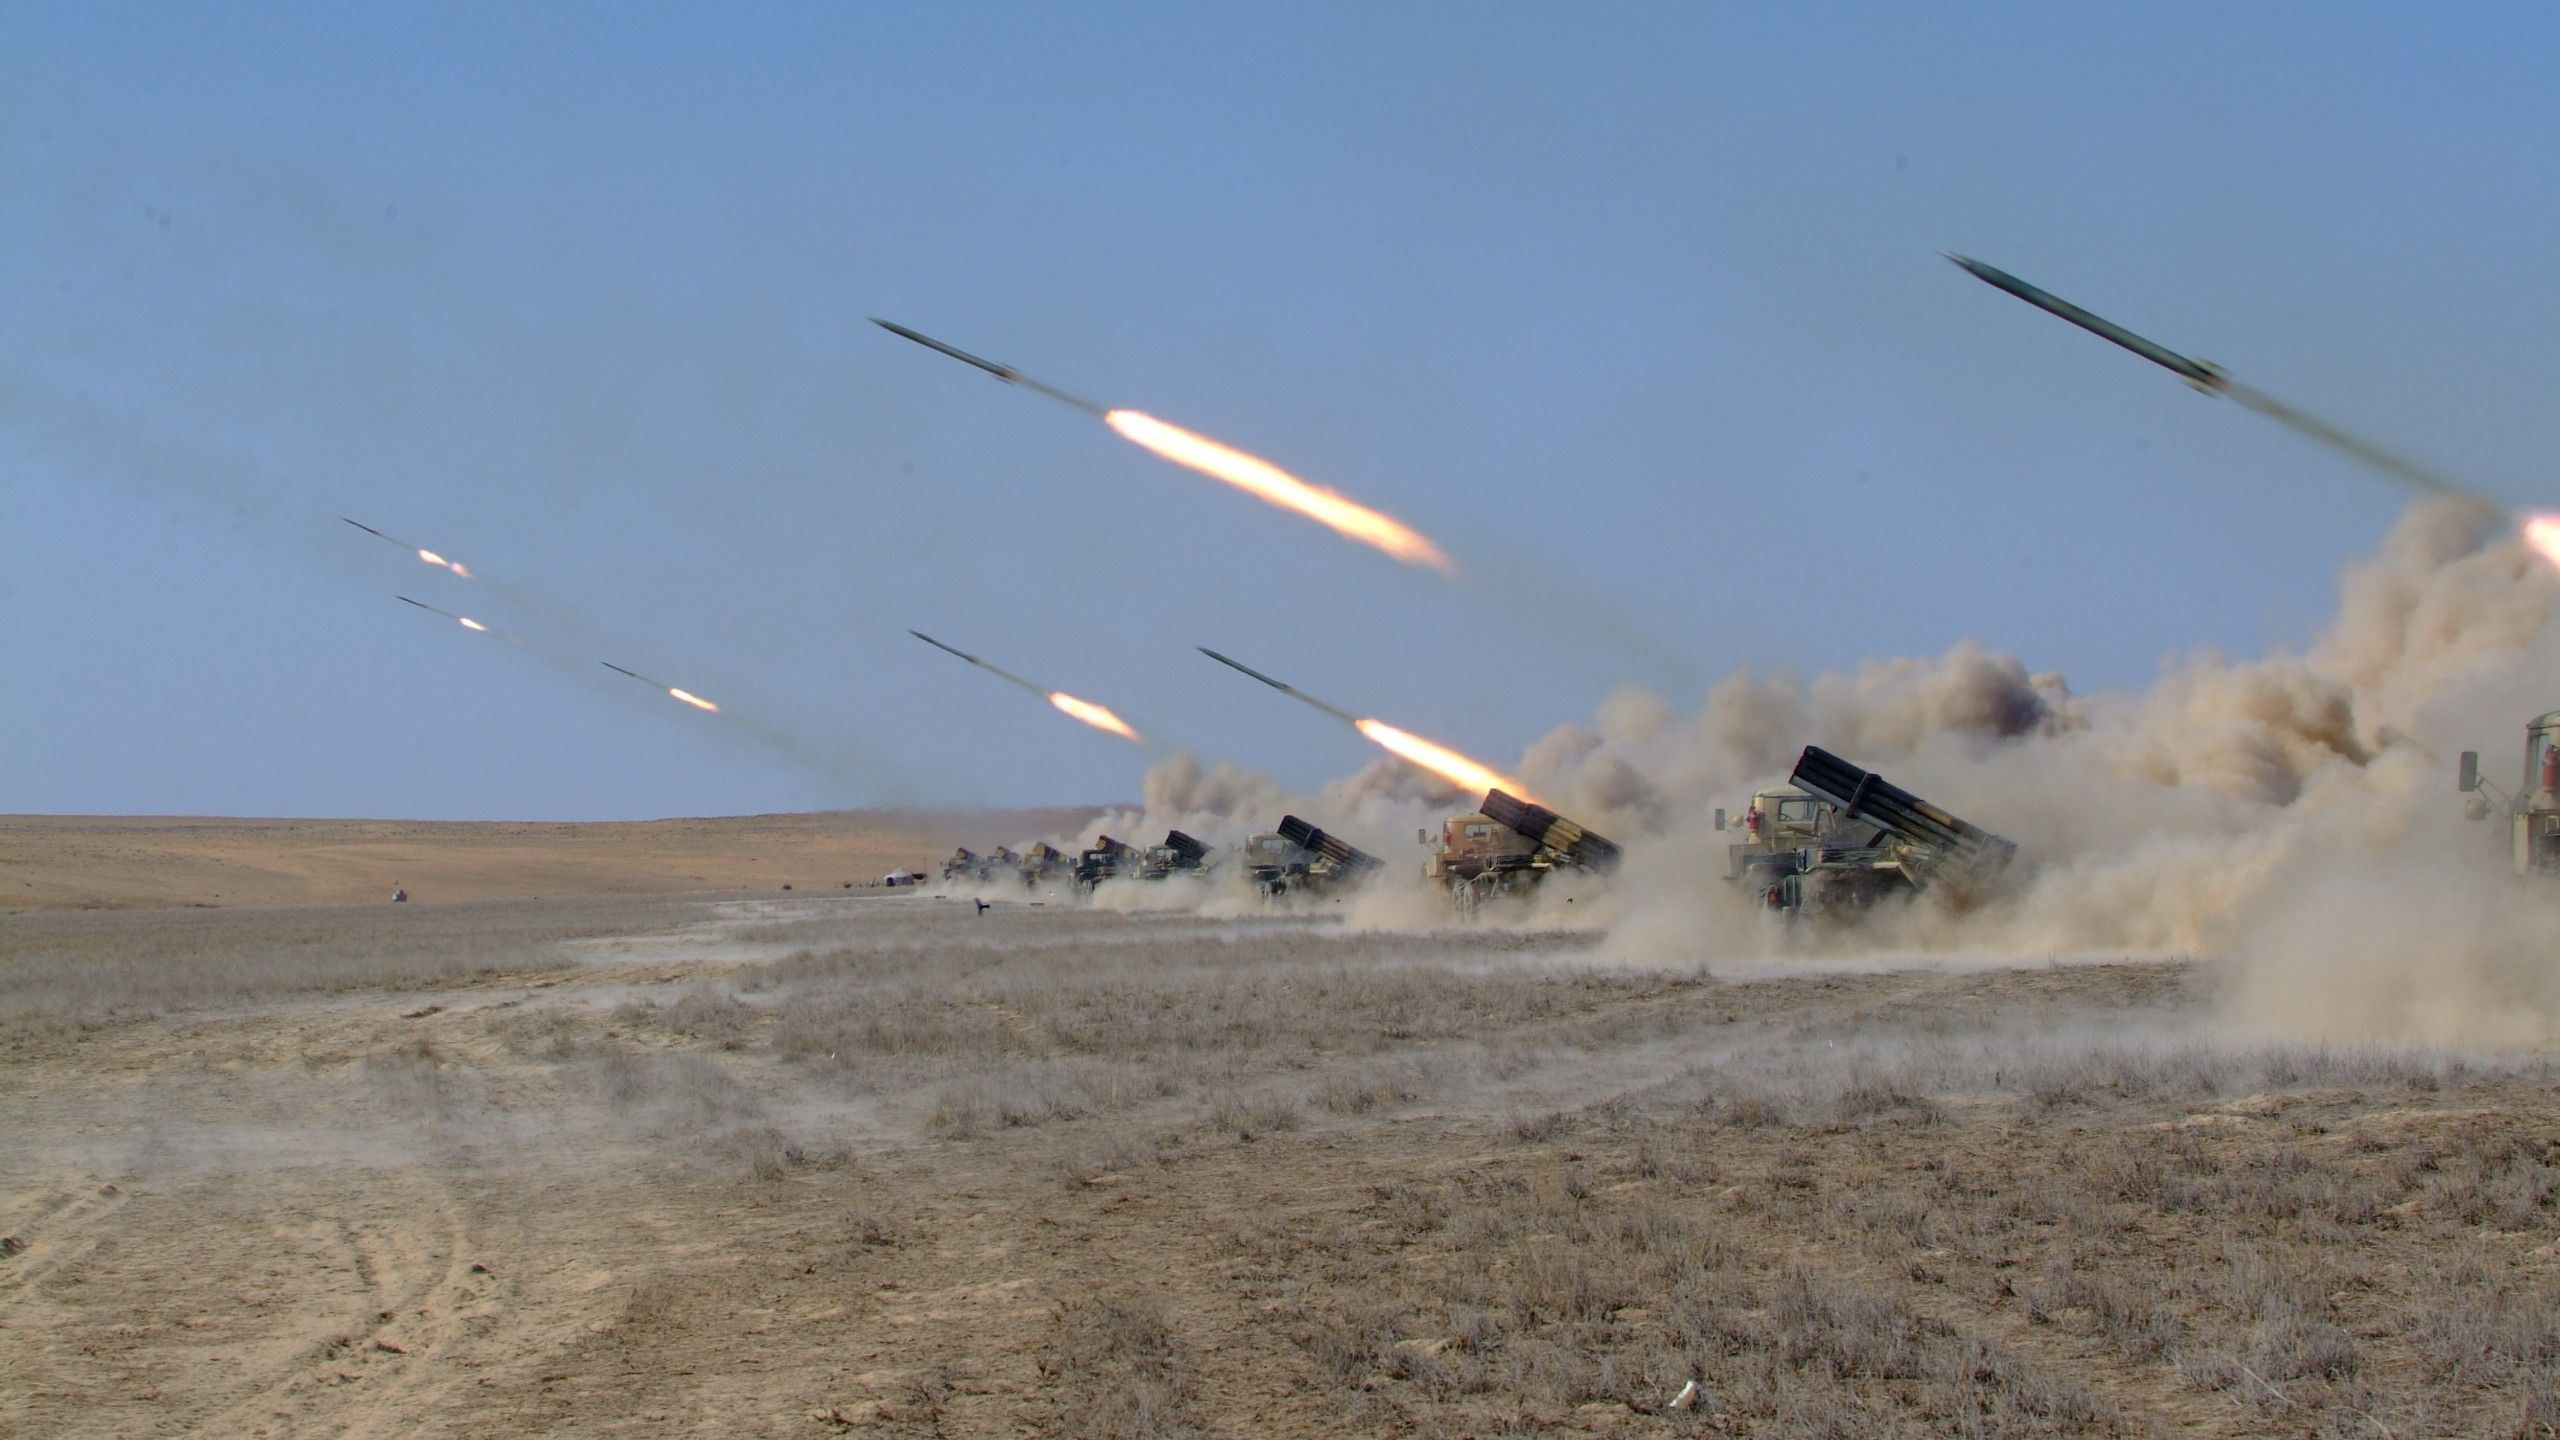 Wallpaper Naiza, MRL, multiple rocket launcher, artillery, Kazakhstan Armed Forces, desert, firing, Military